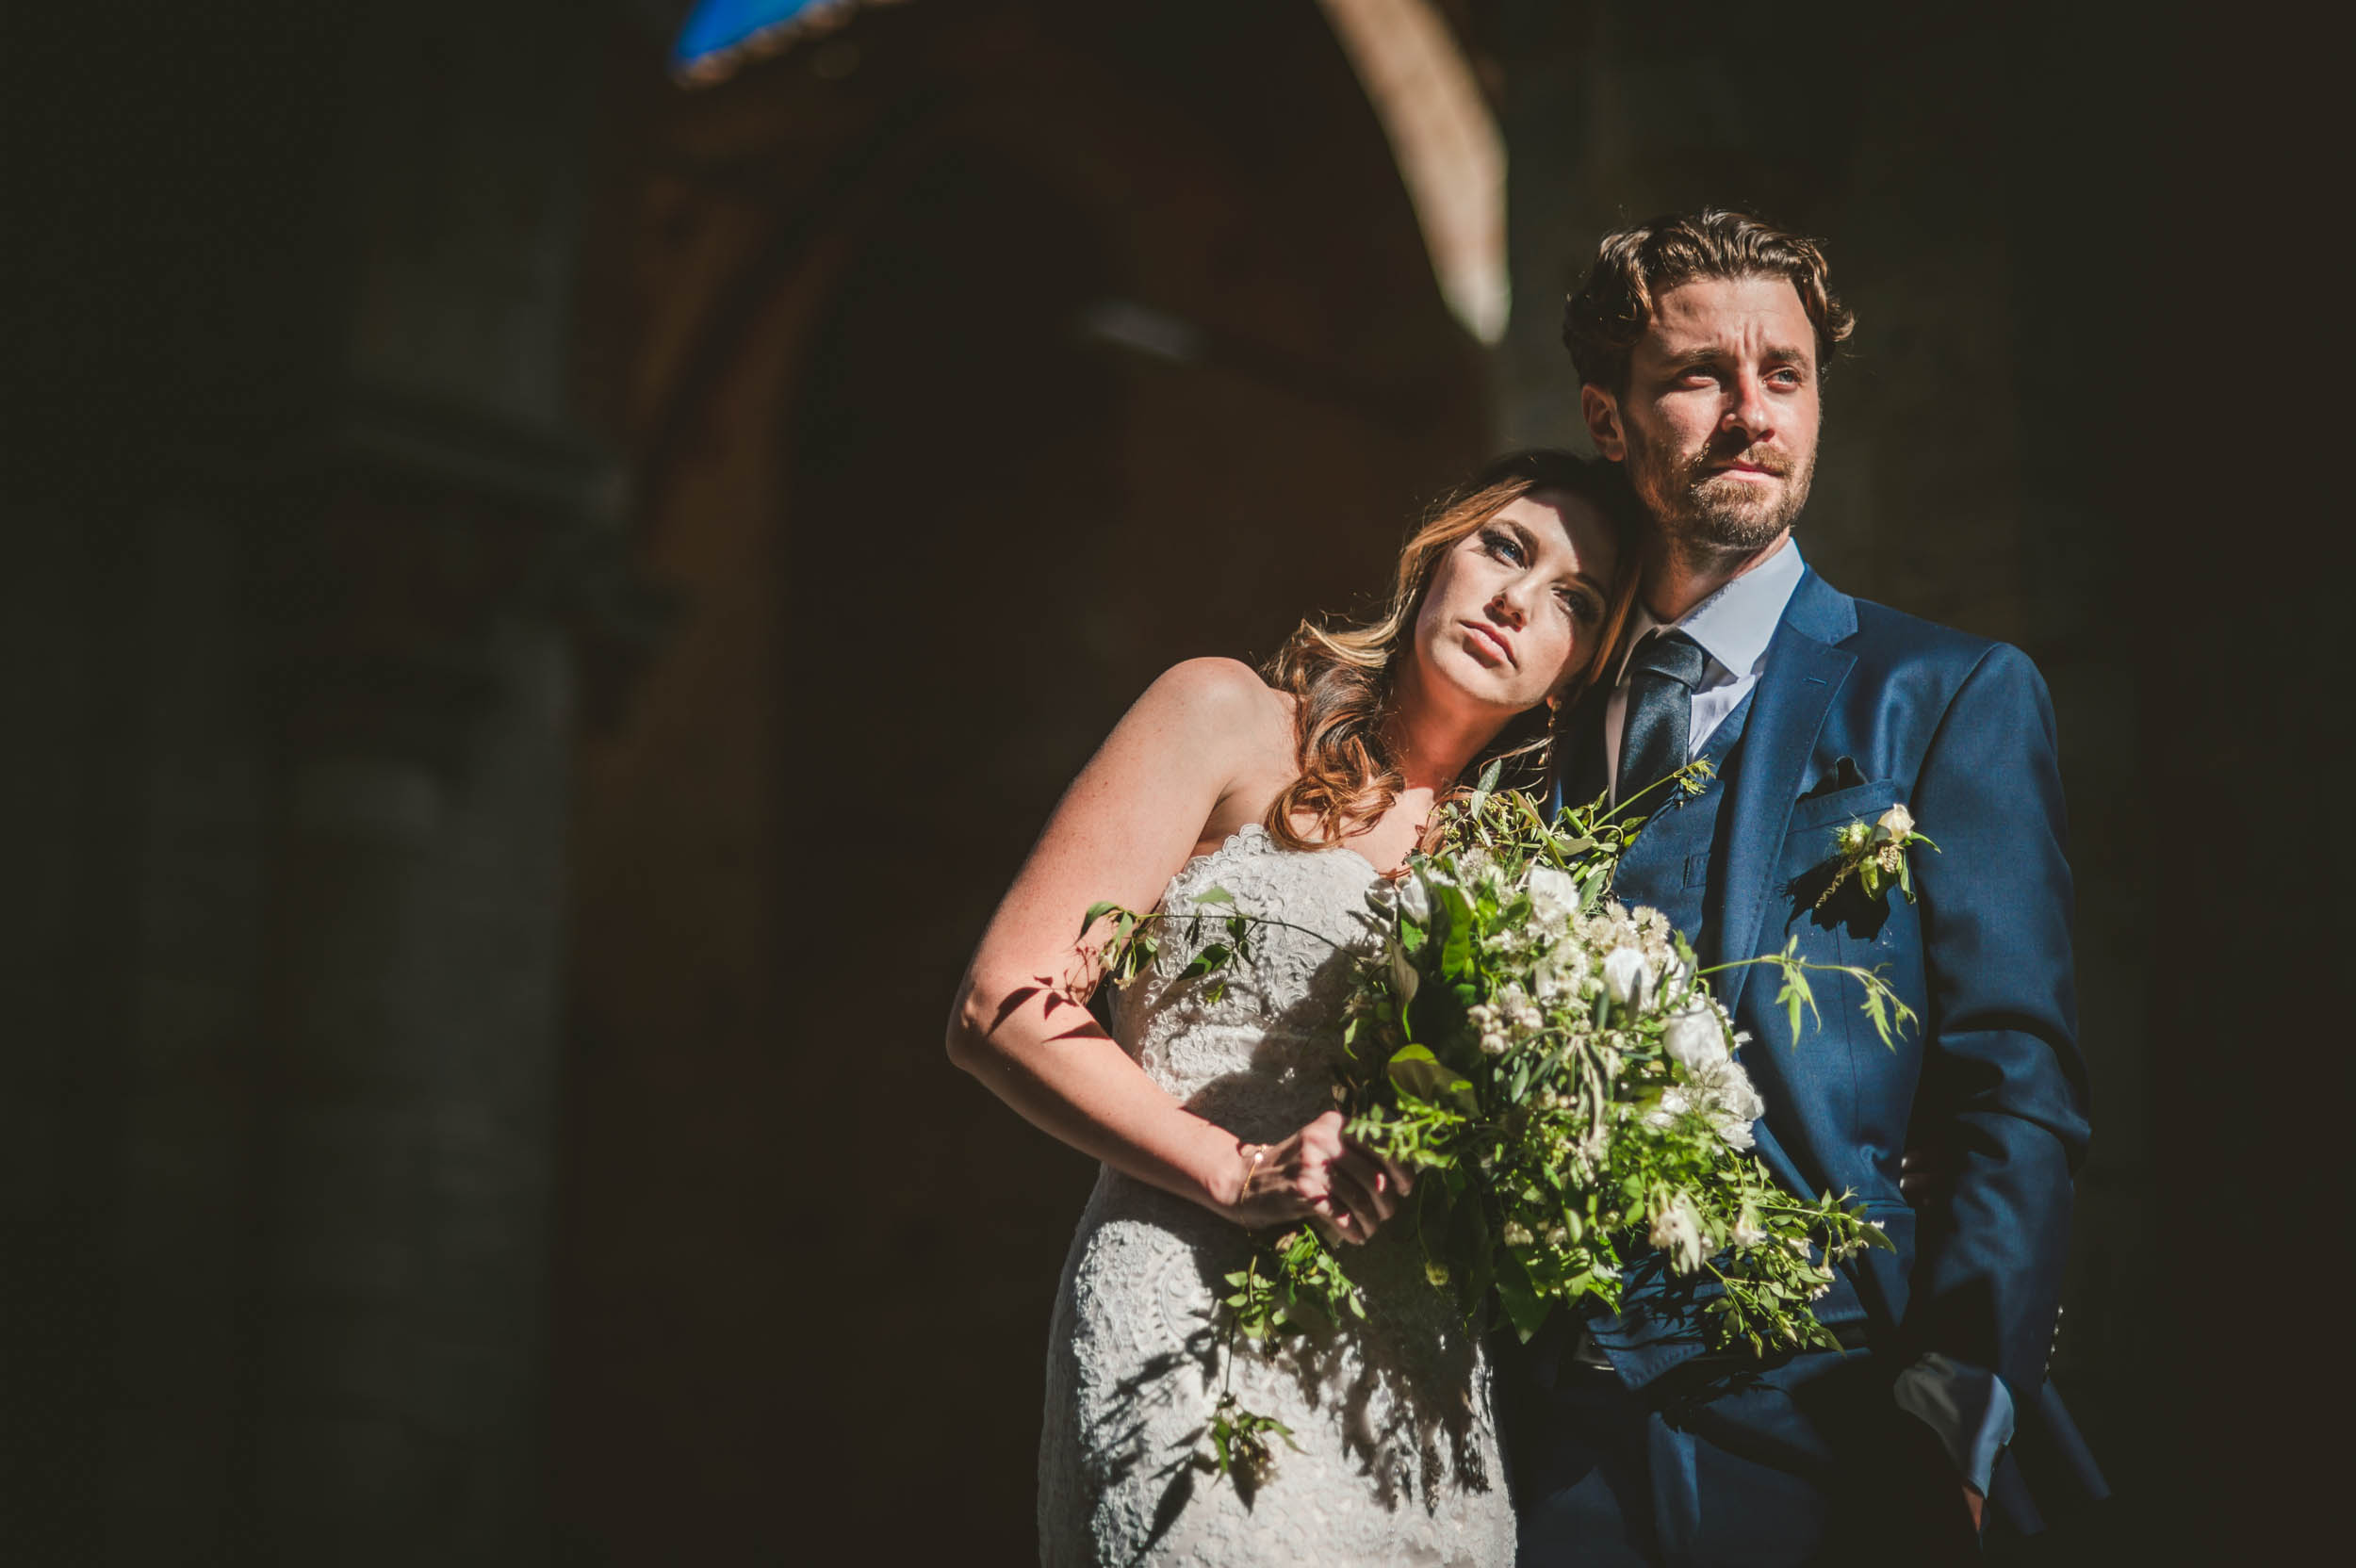 Juliana & Julian - Wedding in San Galgano Abbey - Siena, 18/05/2018